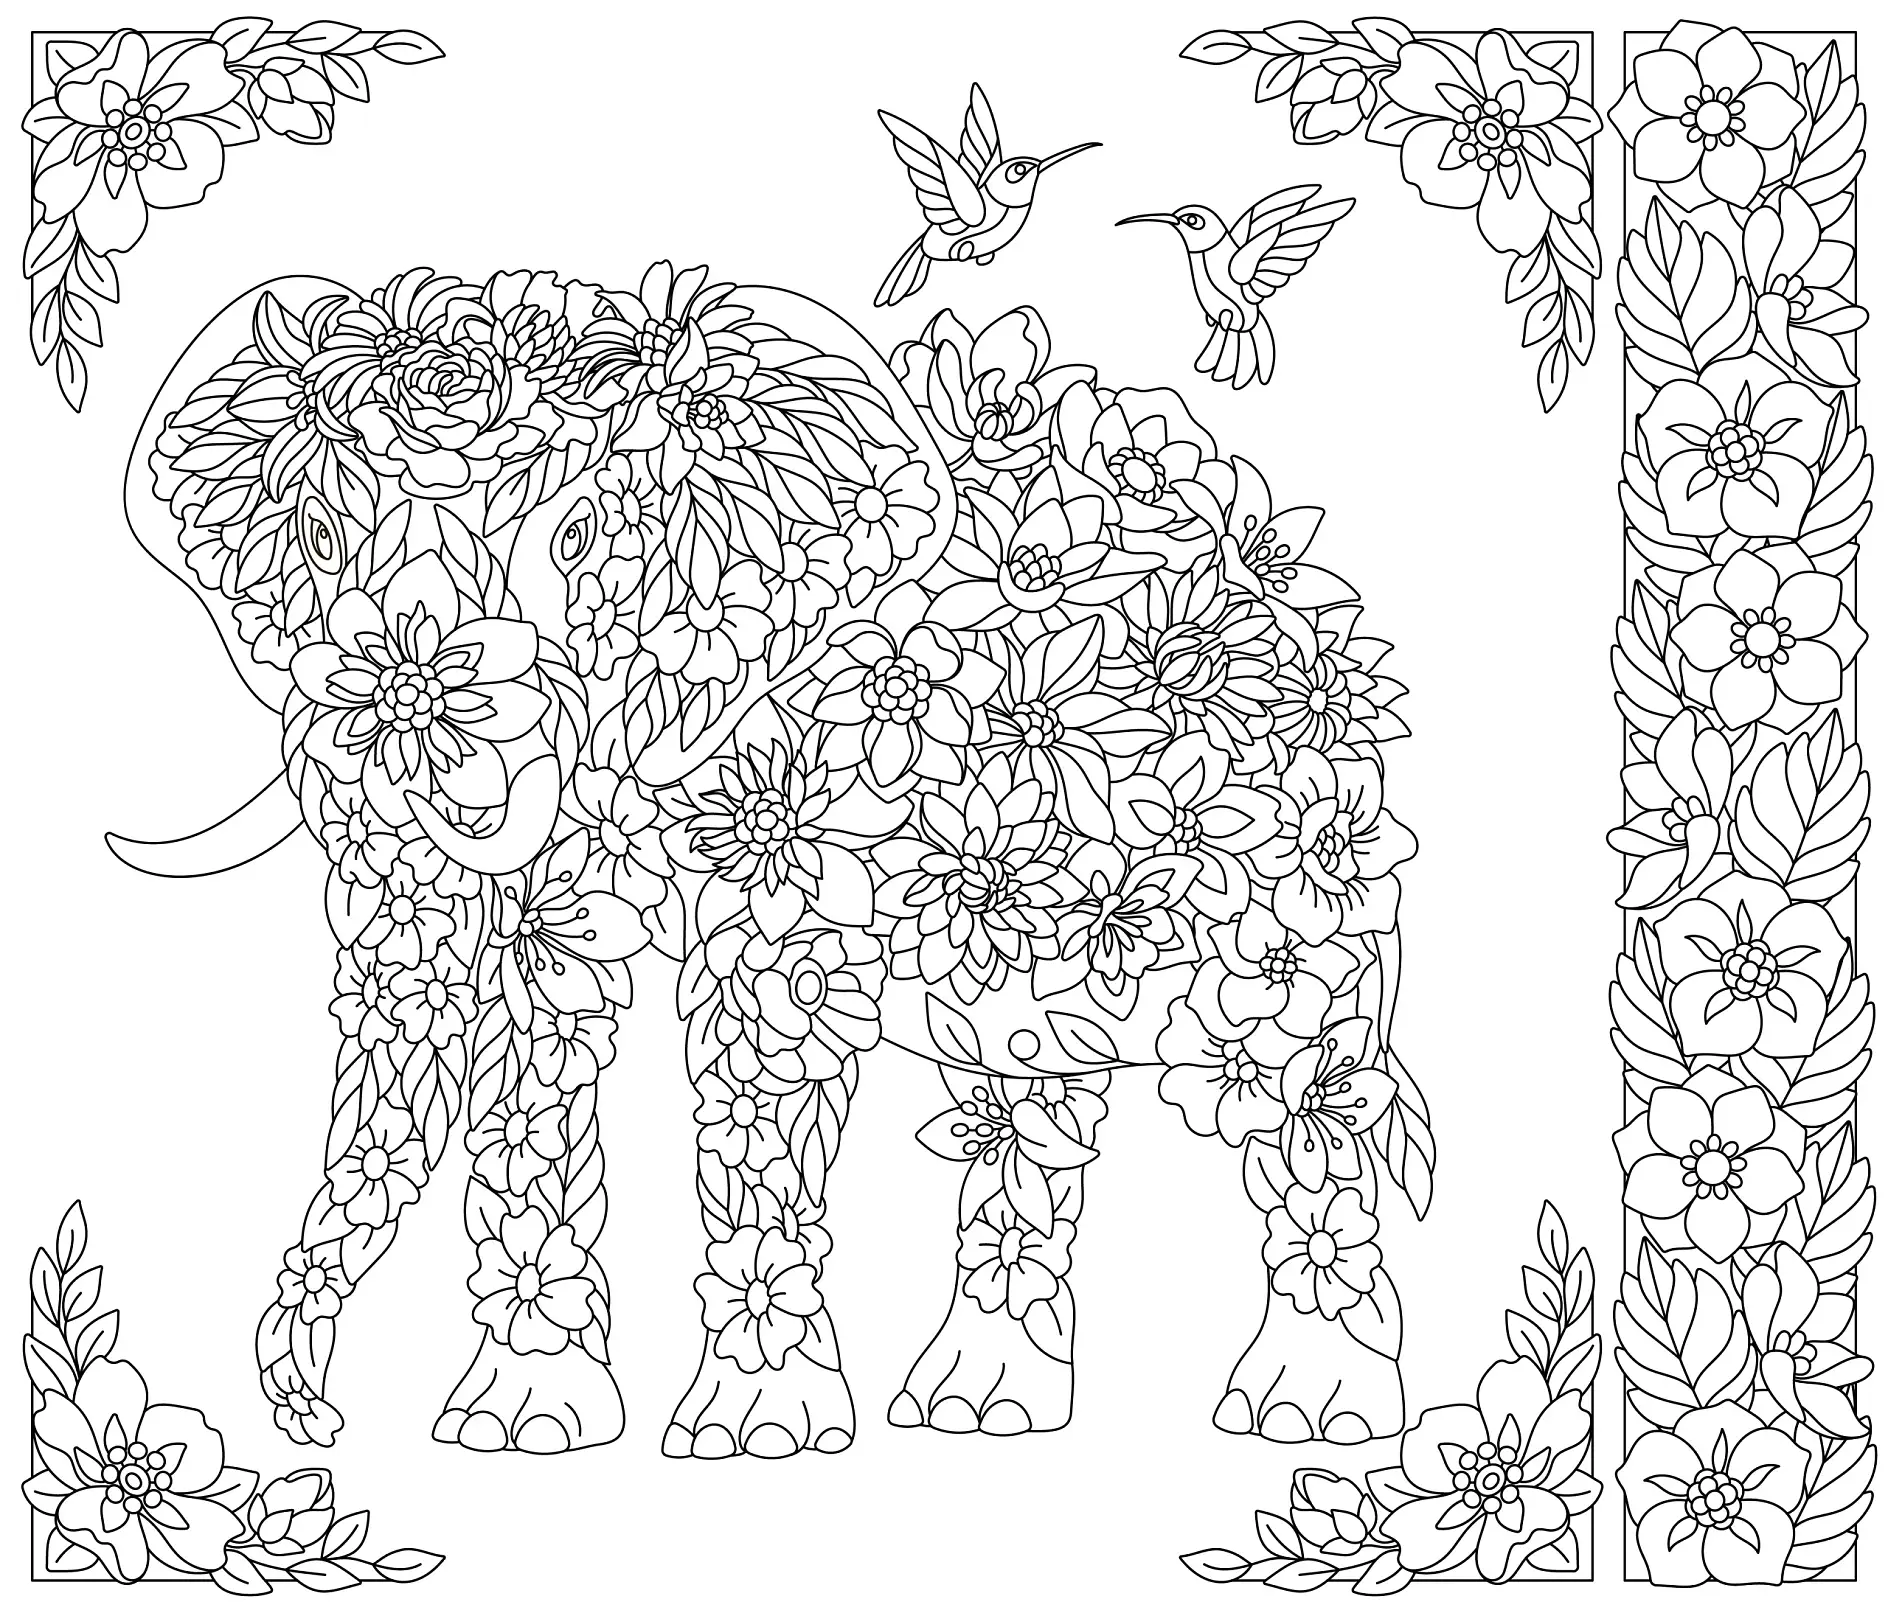 Ausmalbild Mandala Elefant mit Blumenmustern und Kolibris und dekorativem Rahmen